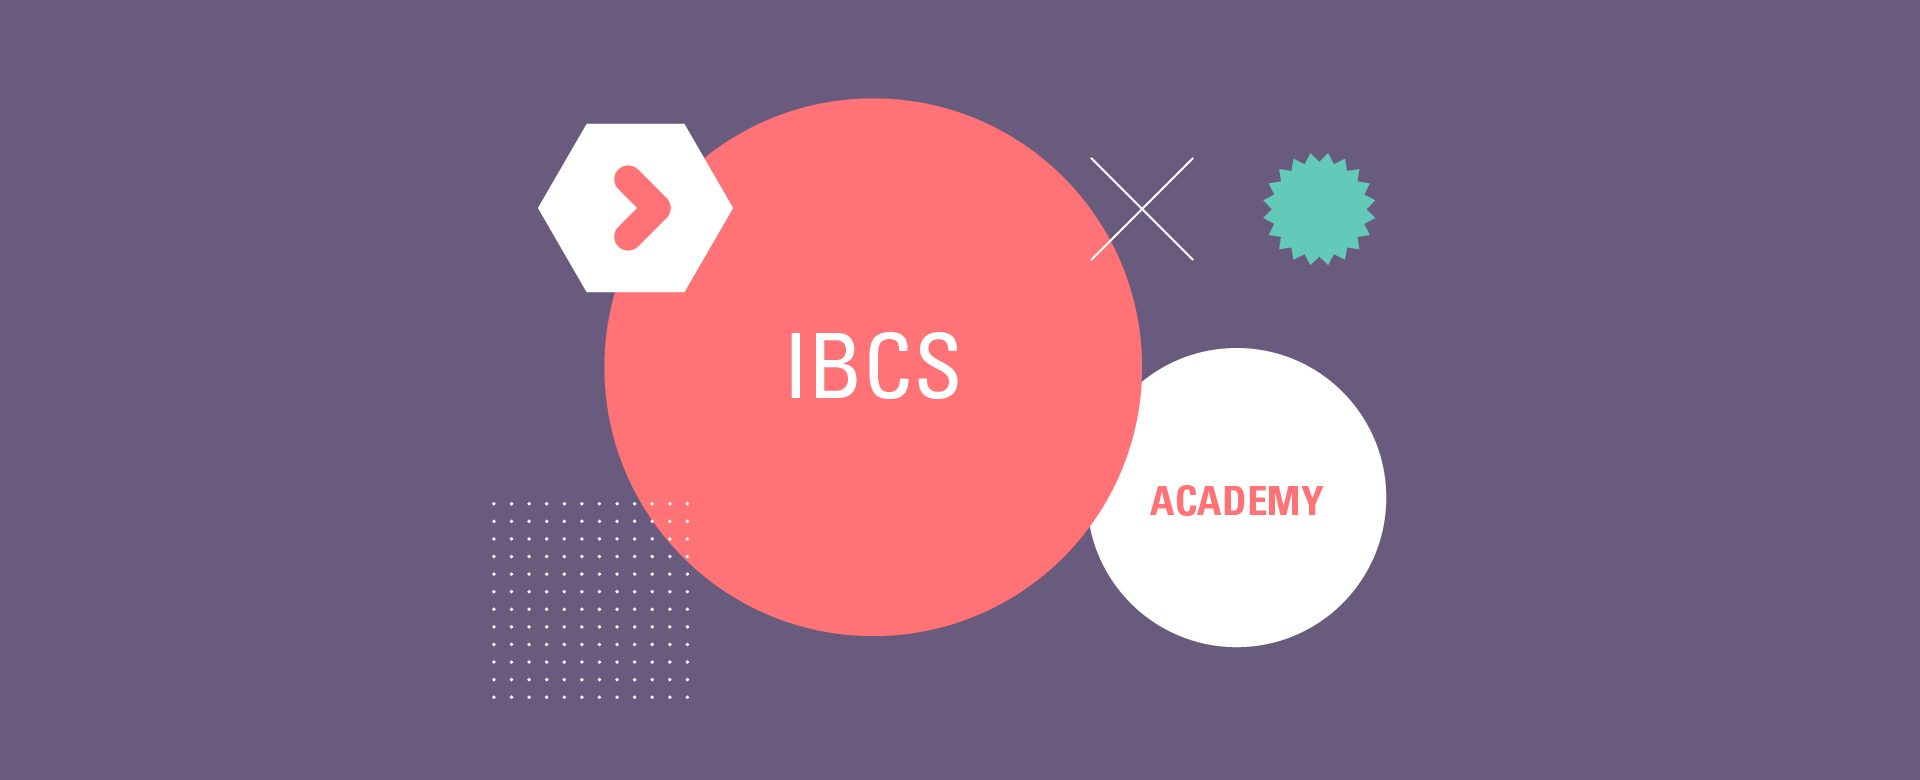 Ibcs-academy